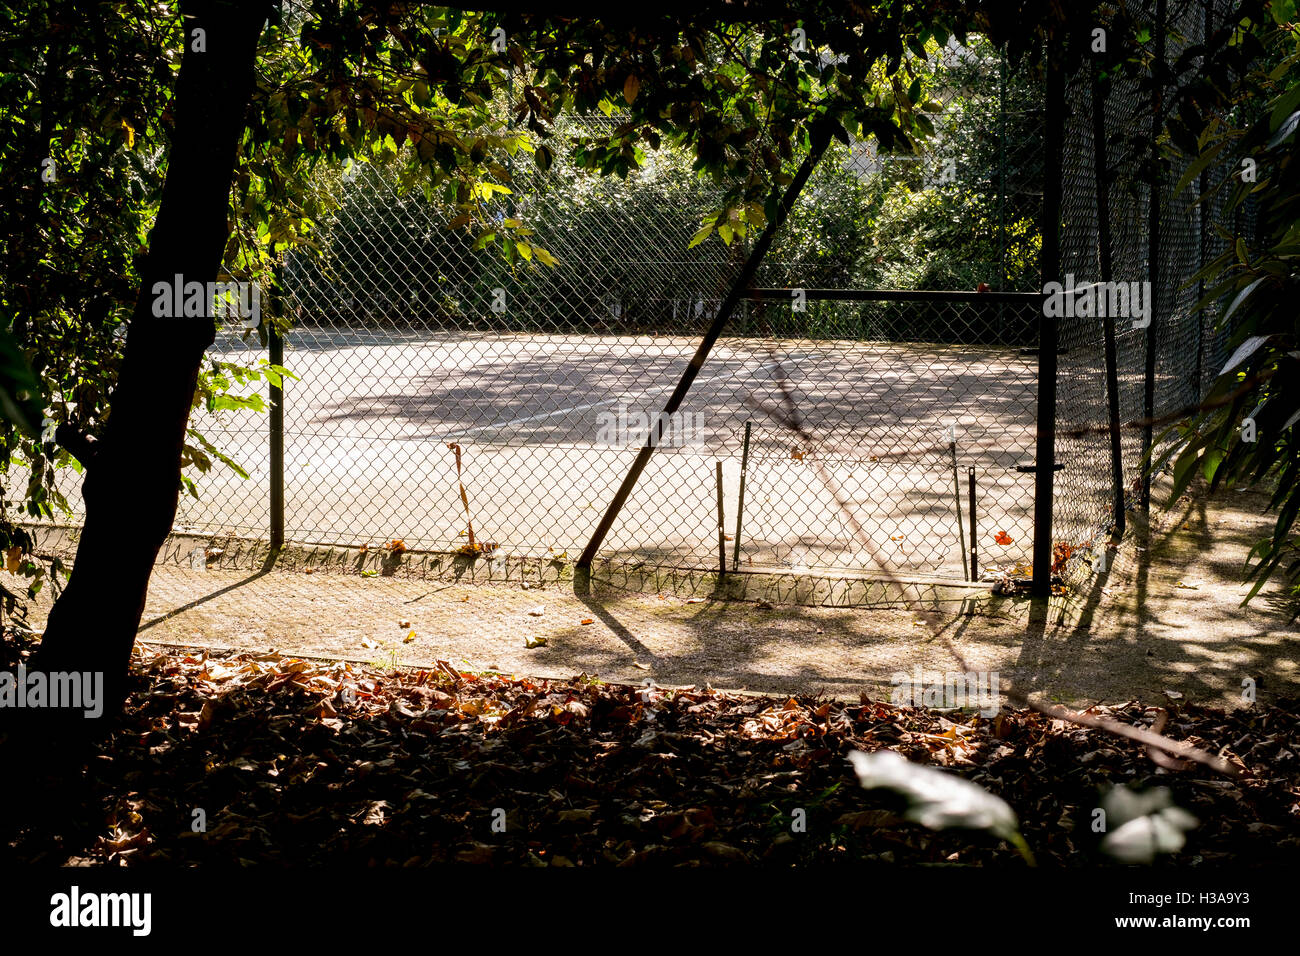 Un disco cancha de tenis bañado por la luz del sol de la mañana Foto de stock